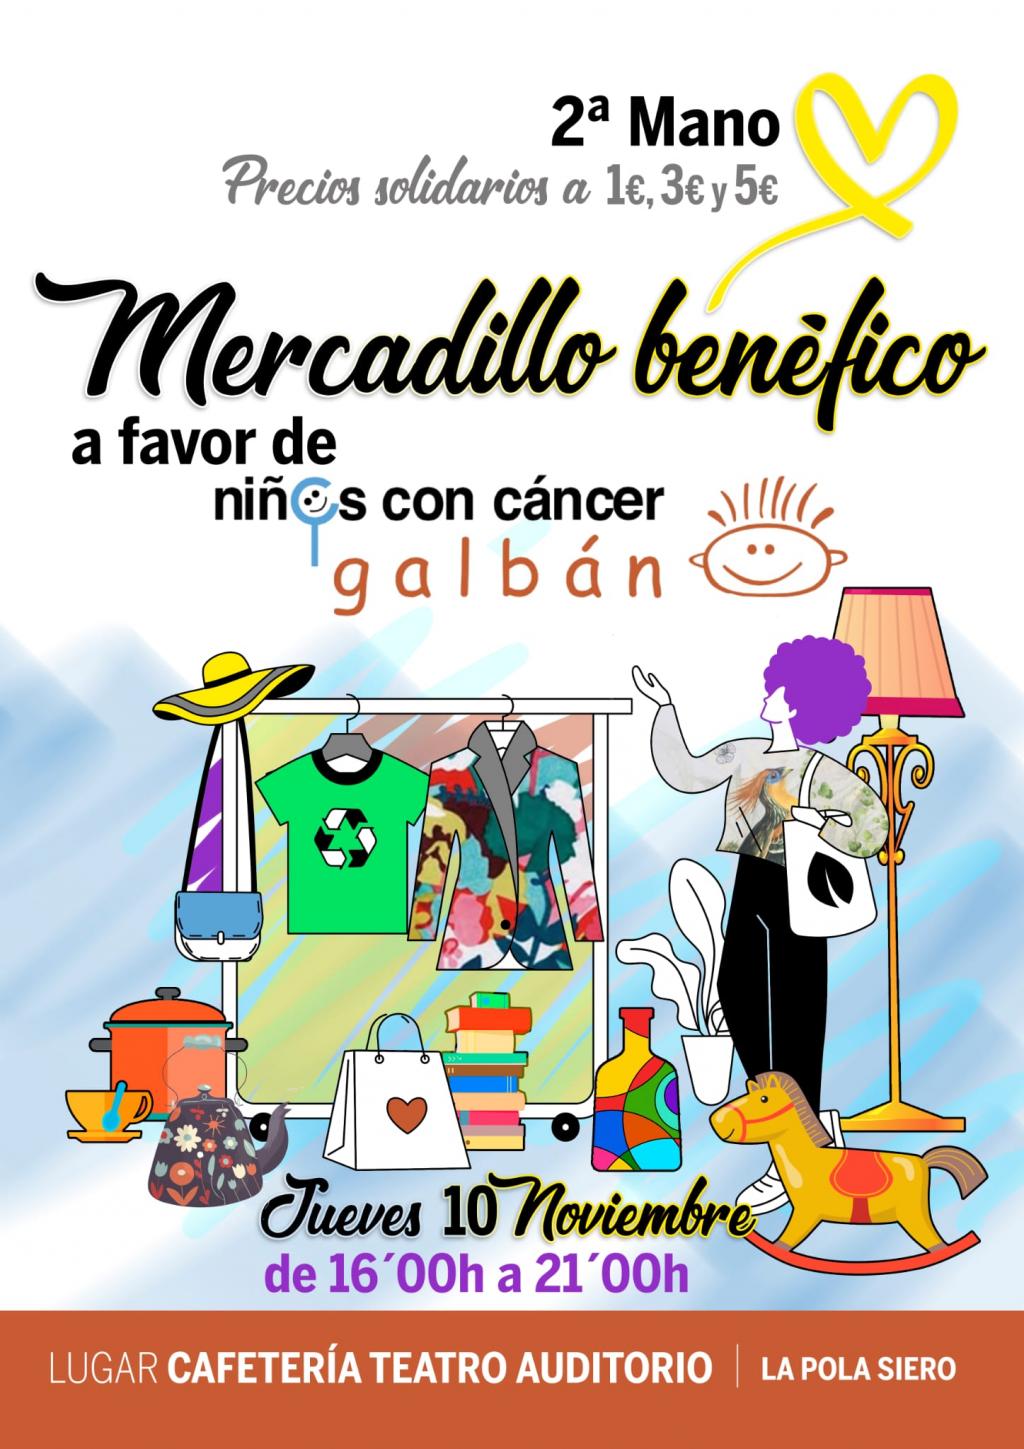 El Tapin - Mercadillo benéfico a favor de Galbán el jueves 10 de noviembre